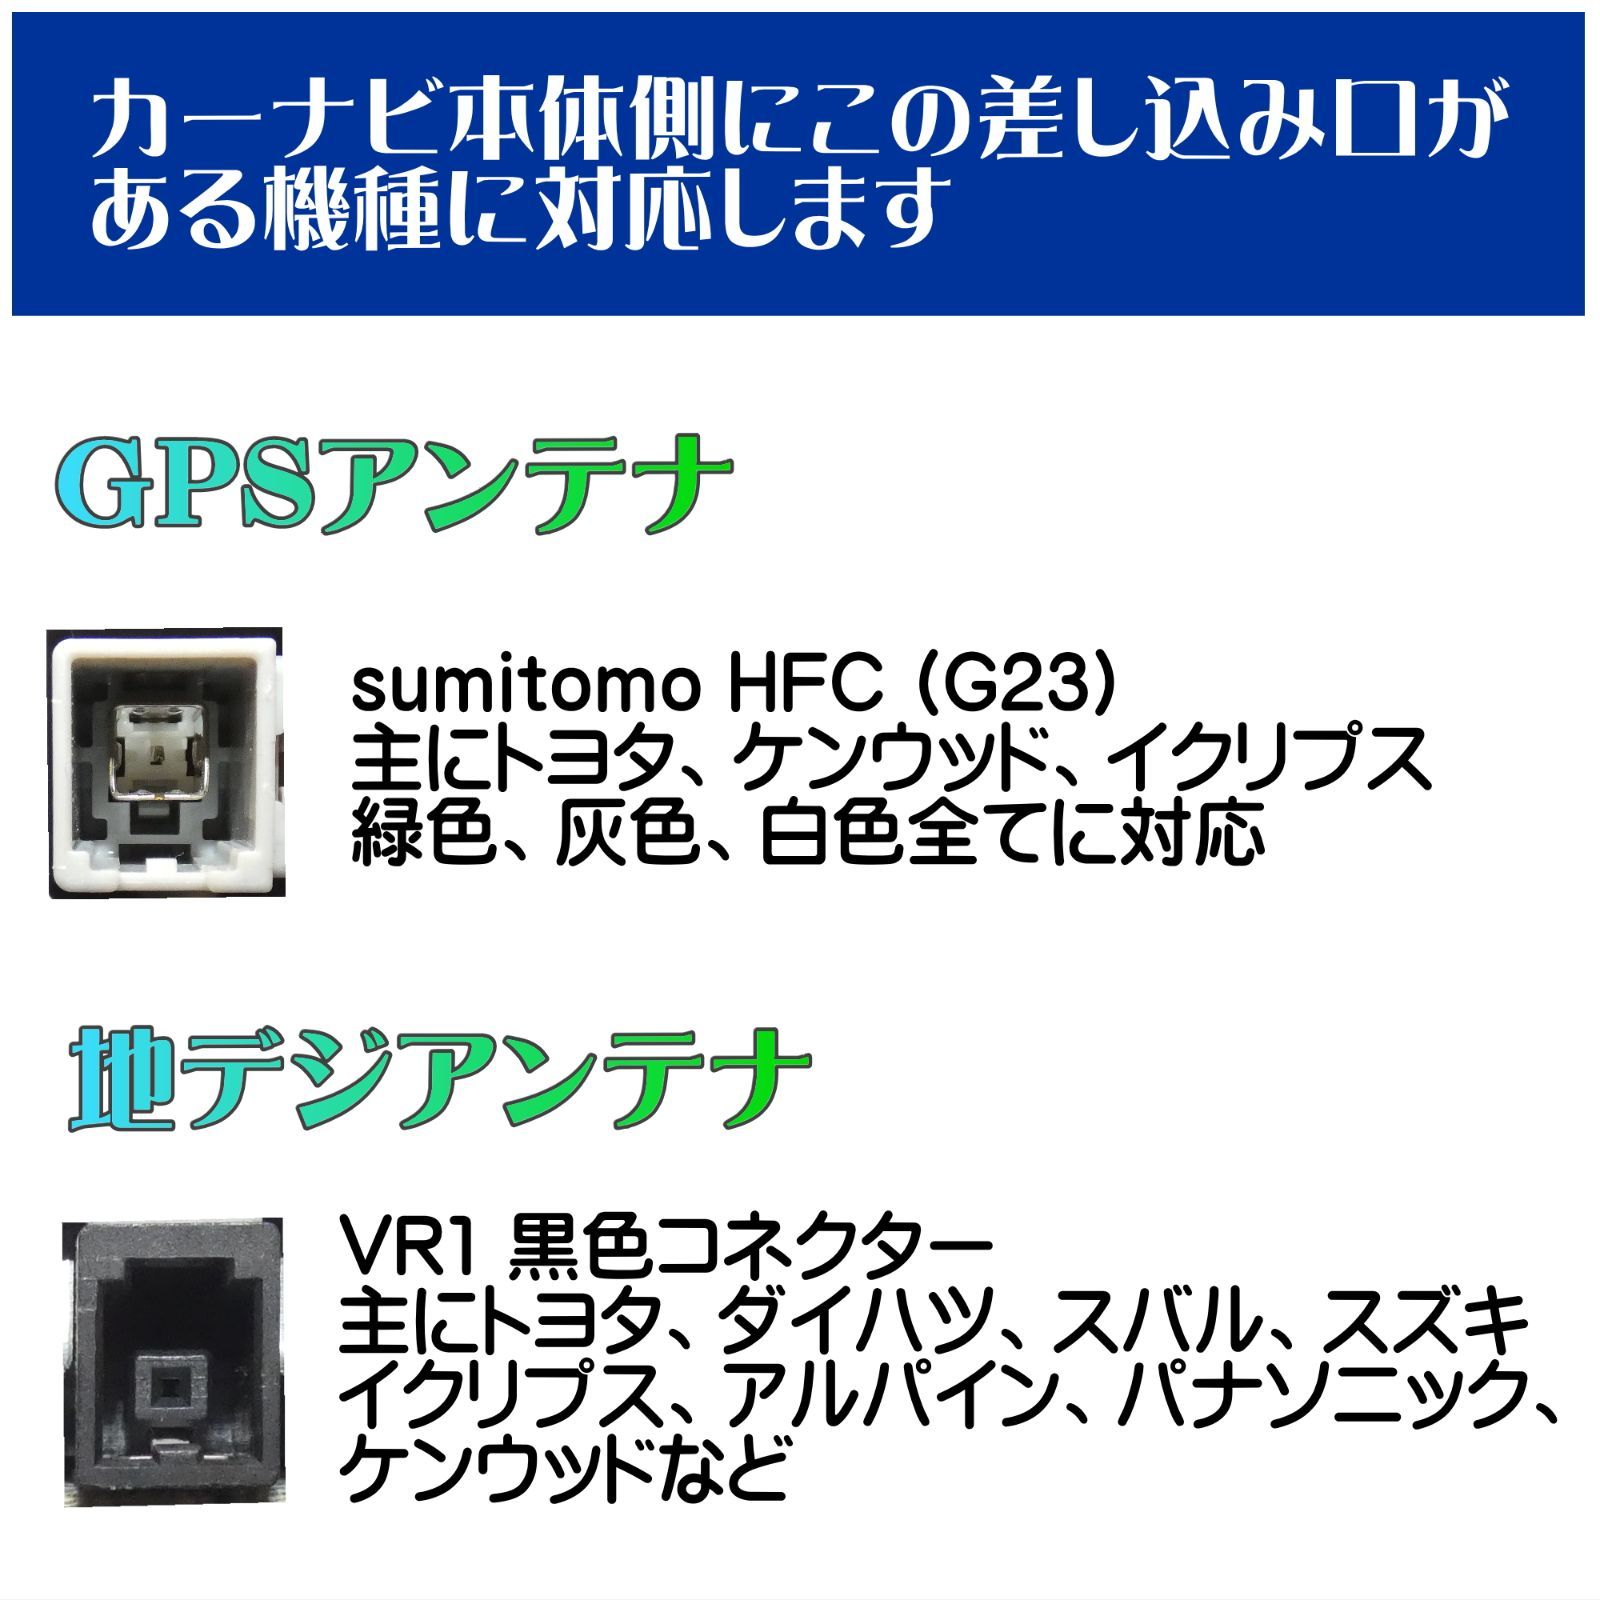 トヨタ / ダイハツ 純正 NDDN-W59 対応 GPS一体型 ワンセグ フィルムアンテナ アンテナケーブルセット HFC G23 VR1 -  メルカリ